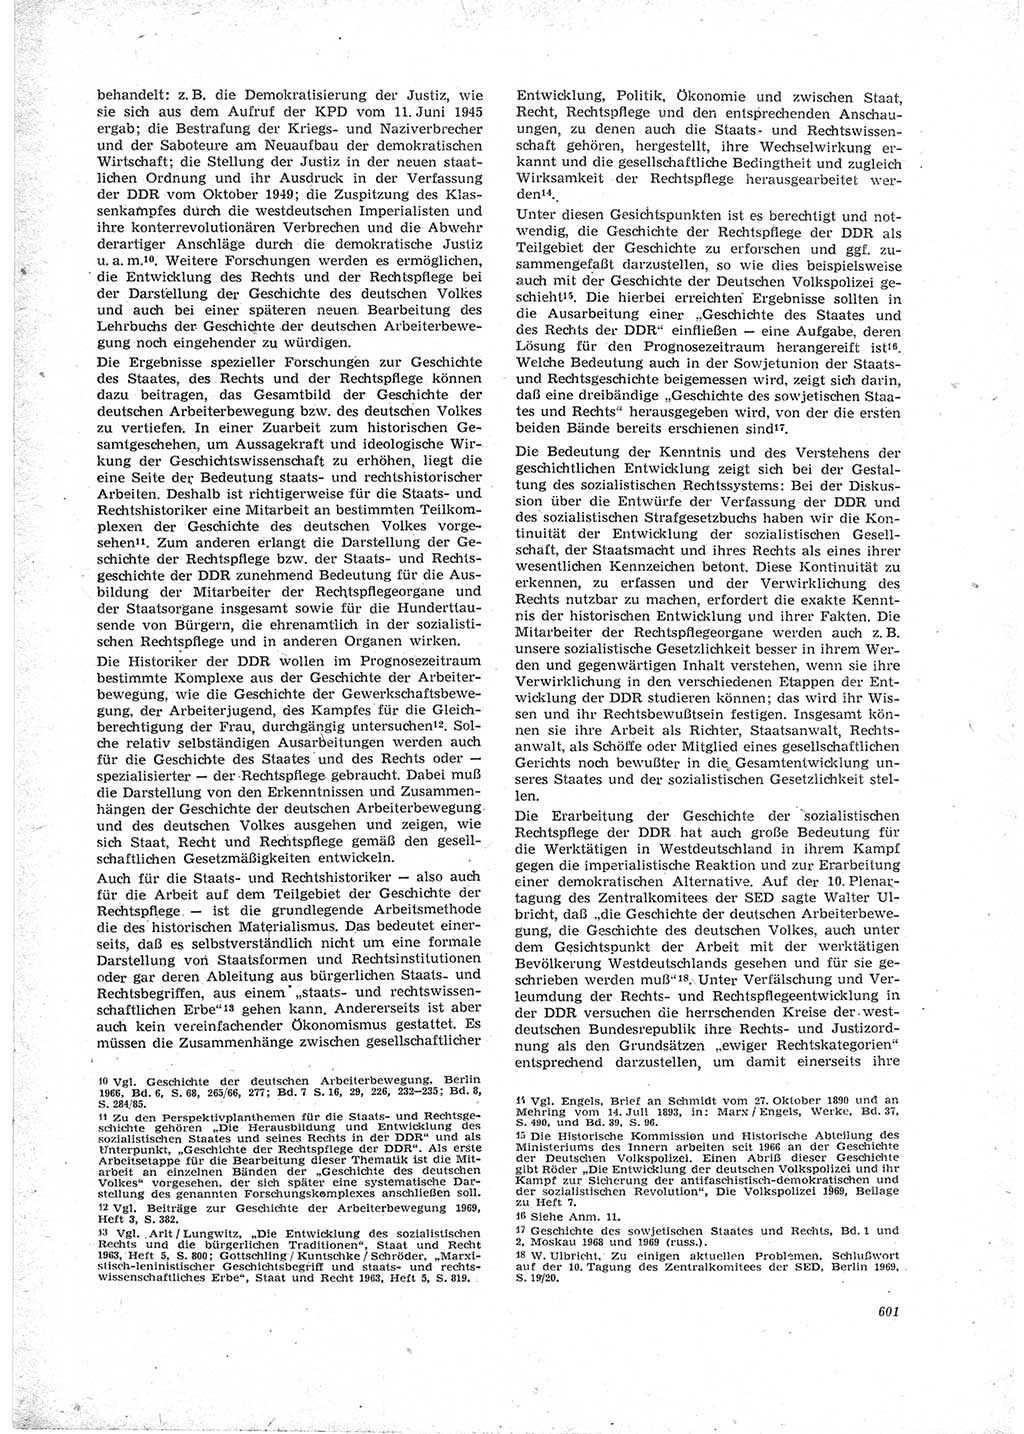 Neue Justiz (NJ), Zeitschrift für Recht und Rechtswissenschaft [Deutsche Demokratische Republik (DDR)], 23. Jahrgang 1969, Seite 601 (NJ DDR 1969, S. 601)